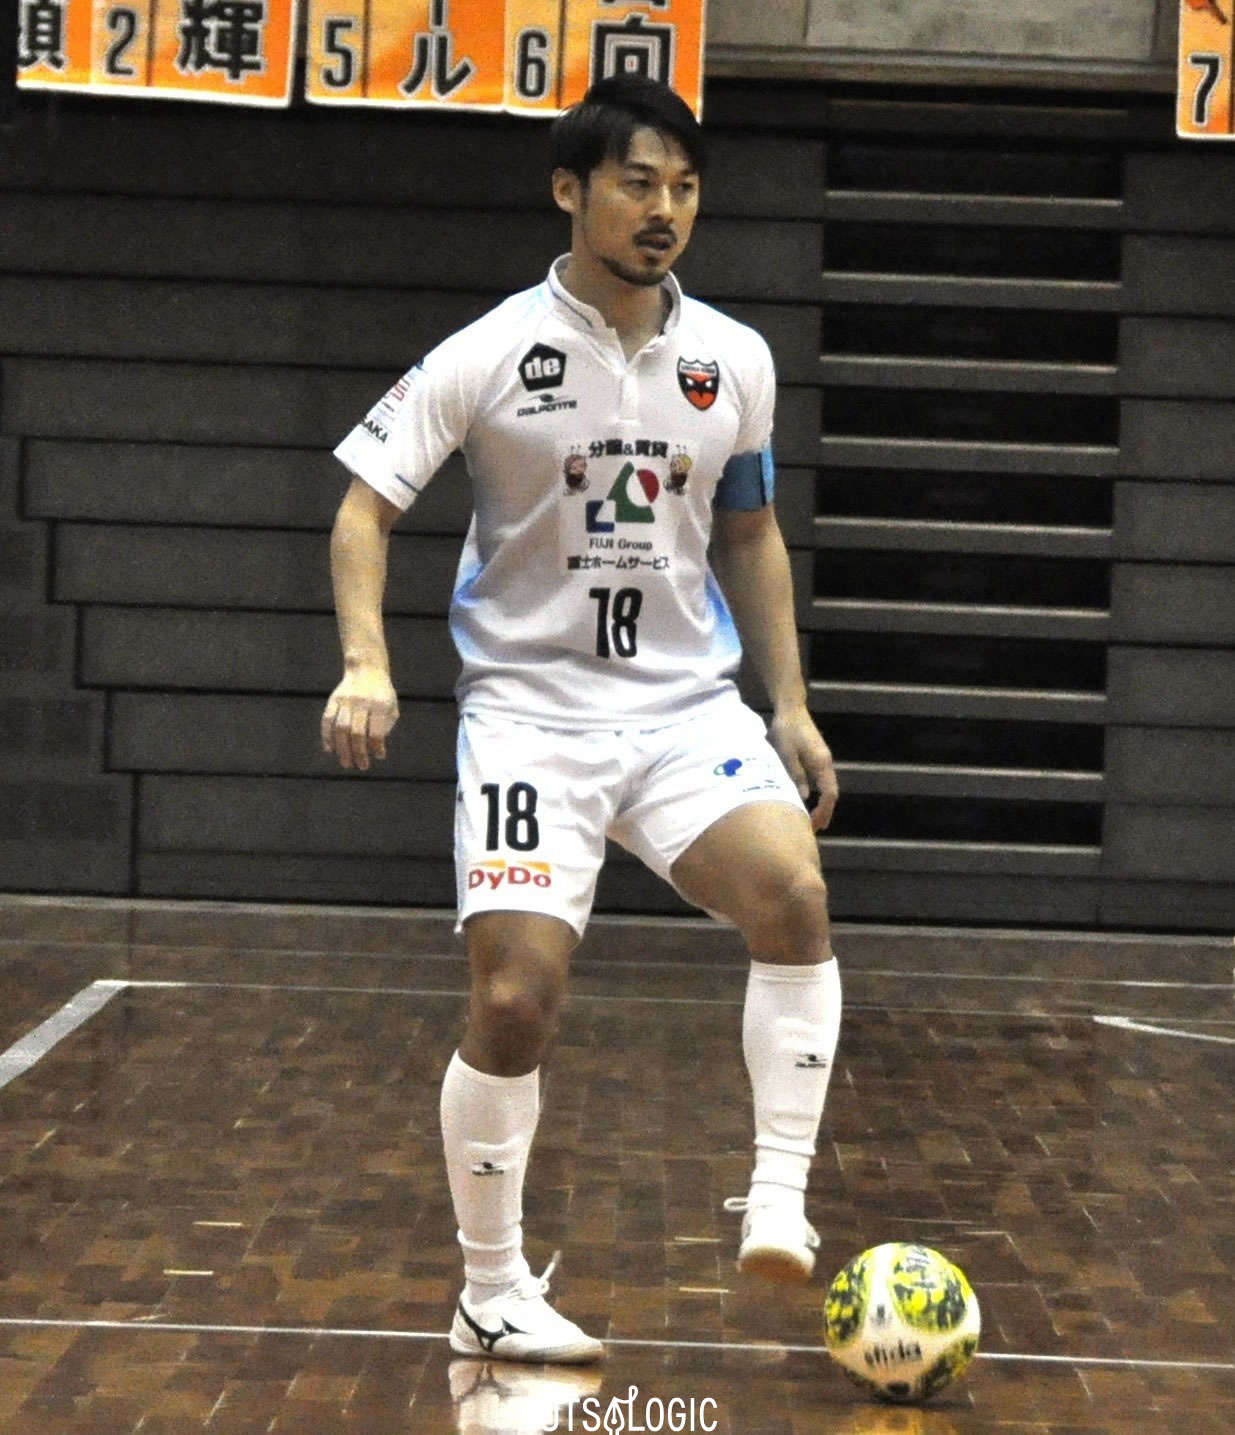 シュライカー大阪 田村友貴主将インタビュー Fl Futsalogic